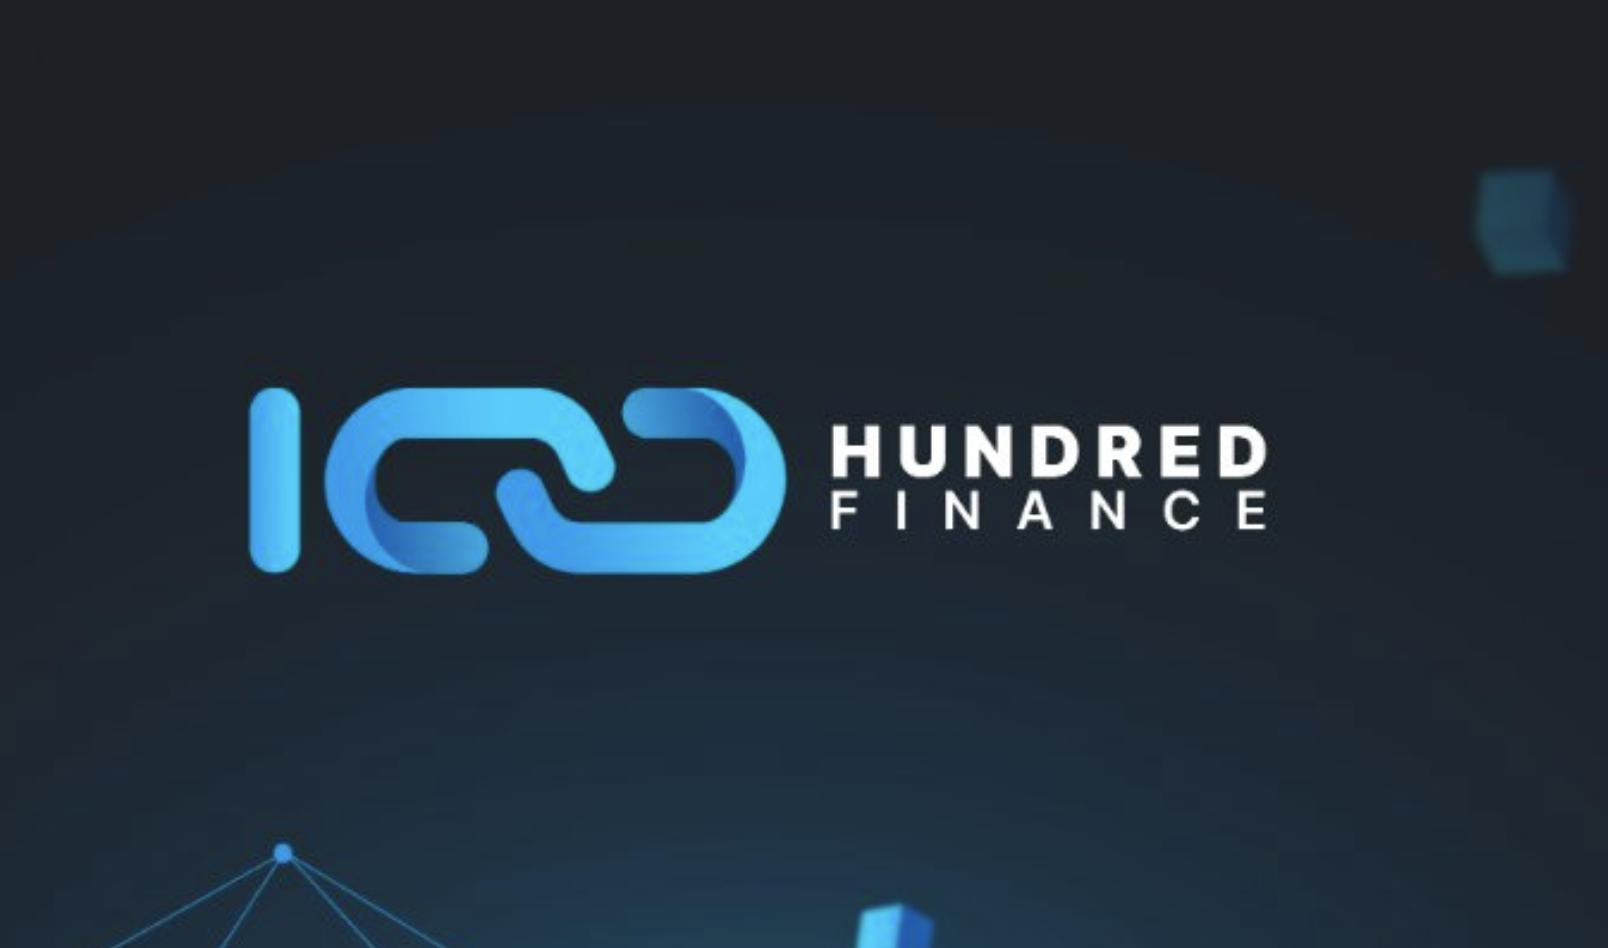 Hundred Finance Logo Graphic